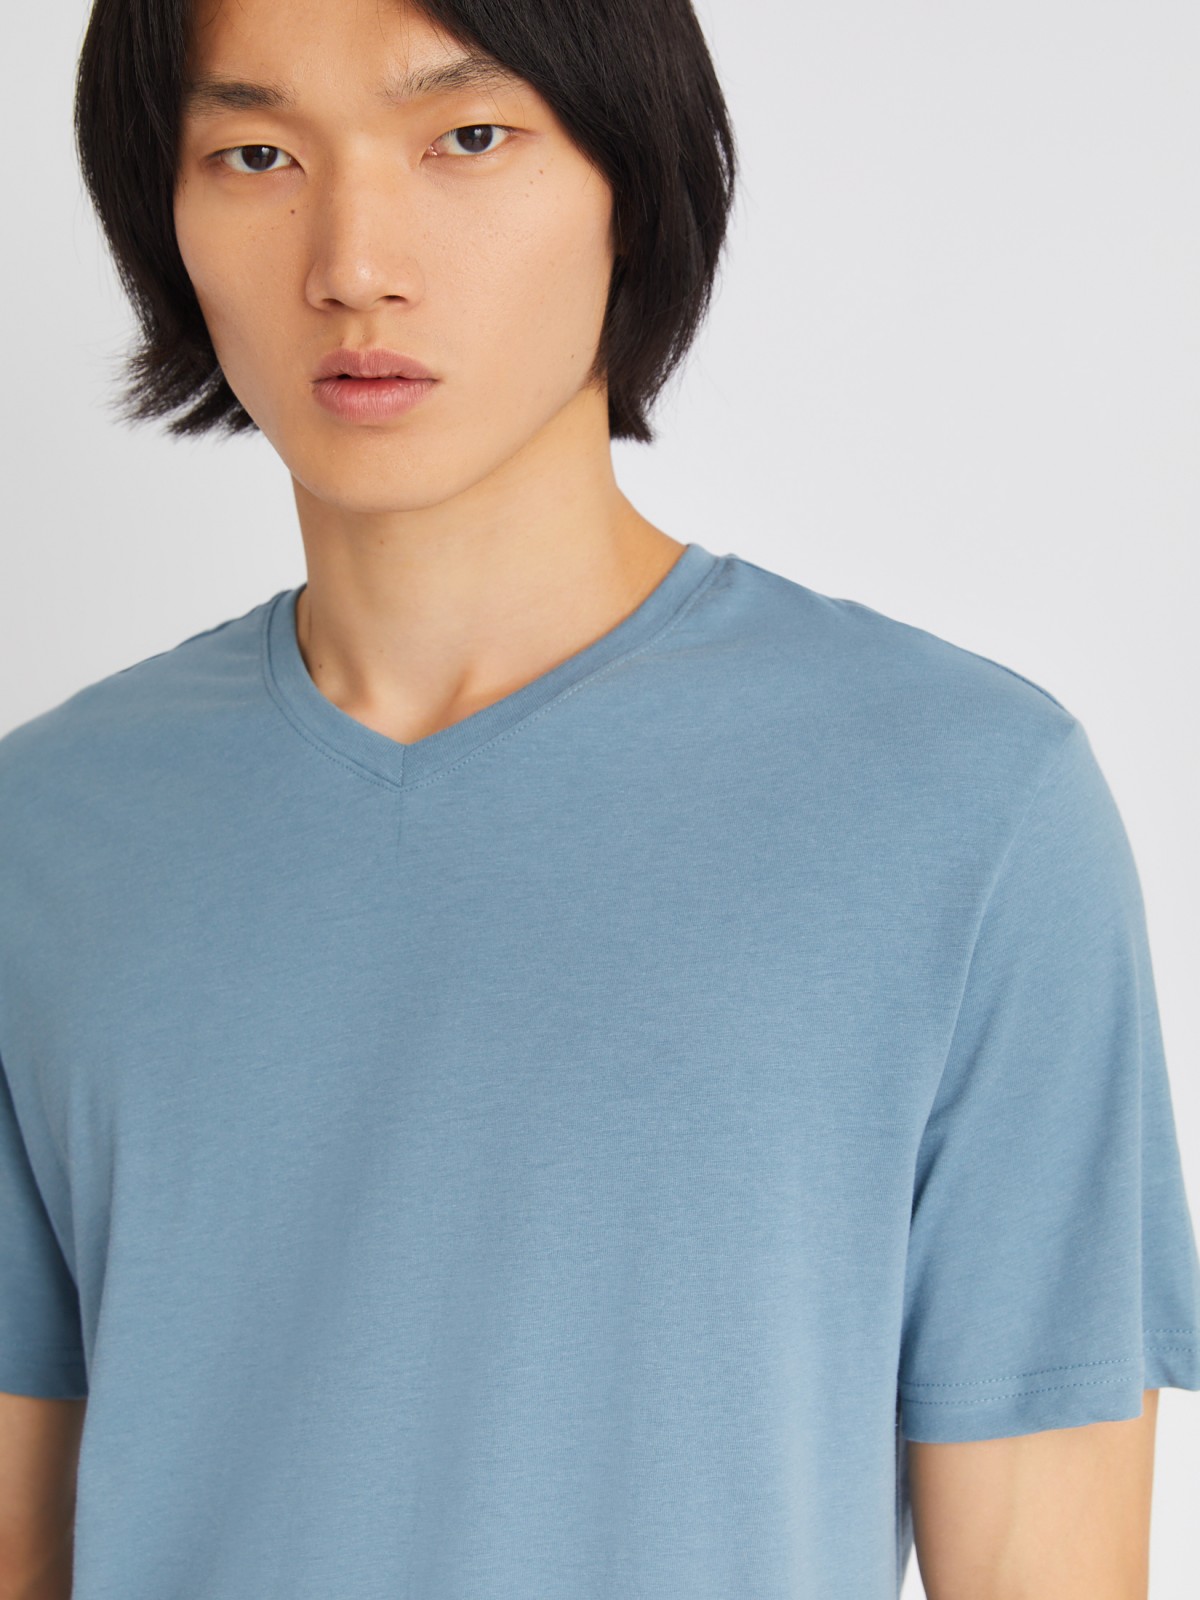 Трикотажная футболка с треугольным вырезом zolla 01331325Q032, цвет голубой, размер XL - фото 5